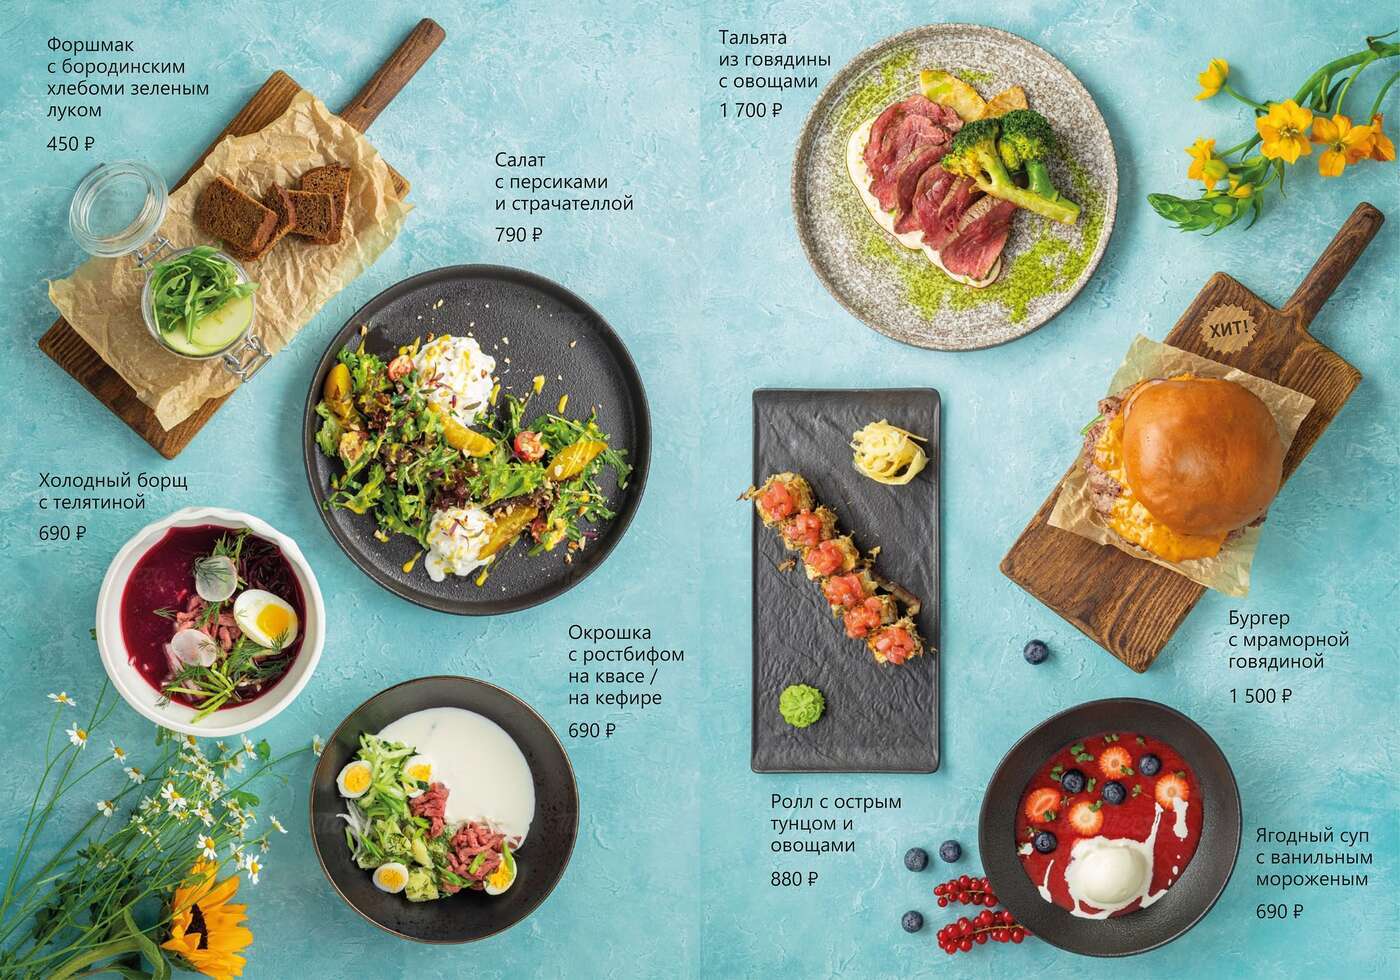 Новое сезонное меню: салат с персиками и страчателлой и окрошка с ростбифом